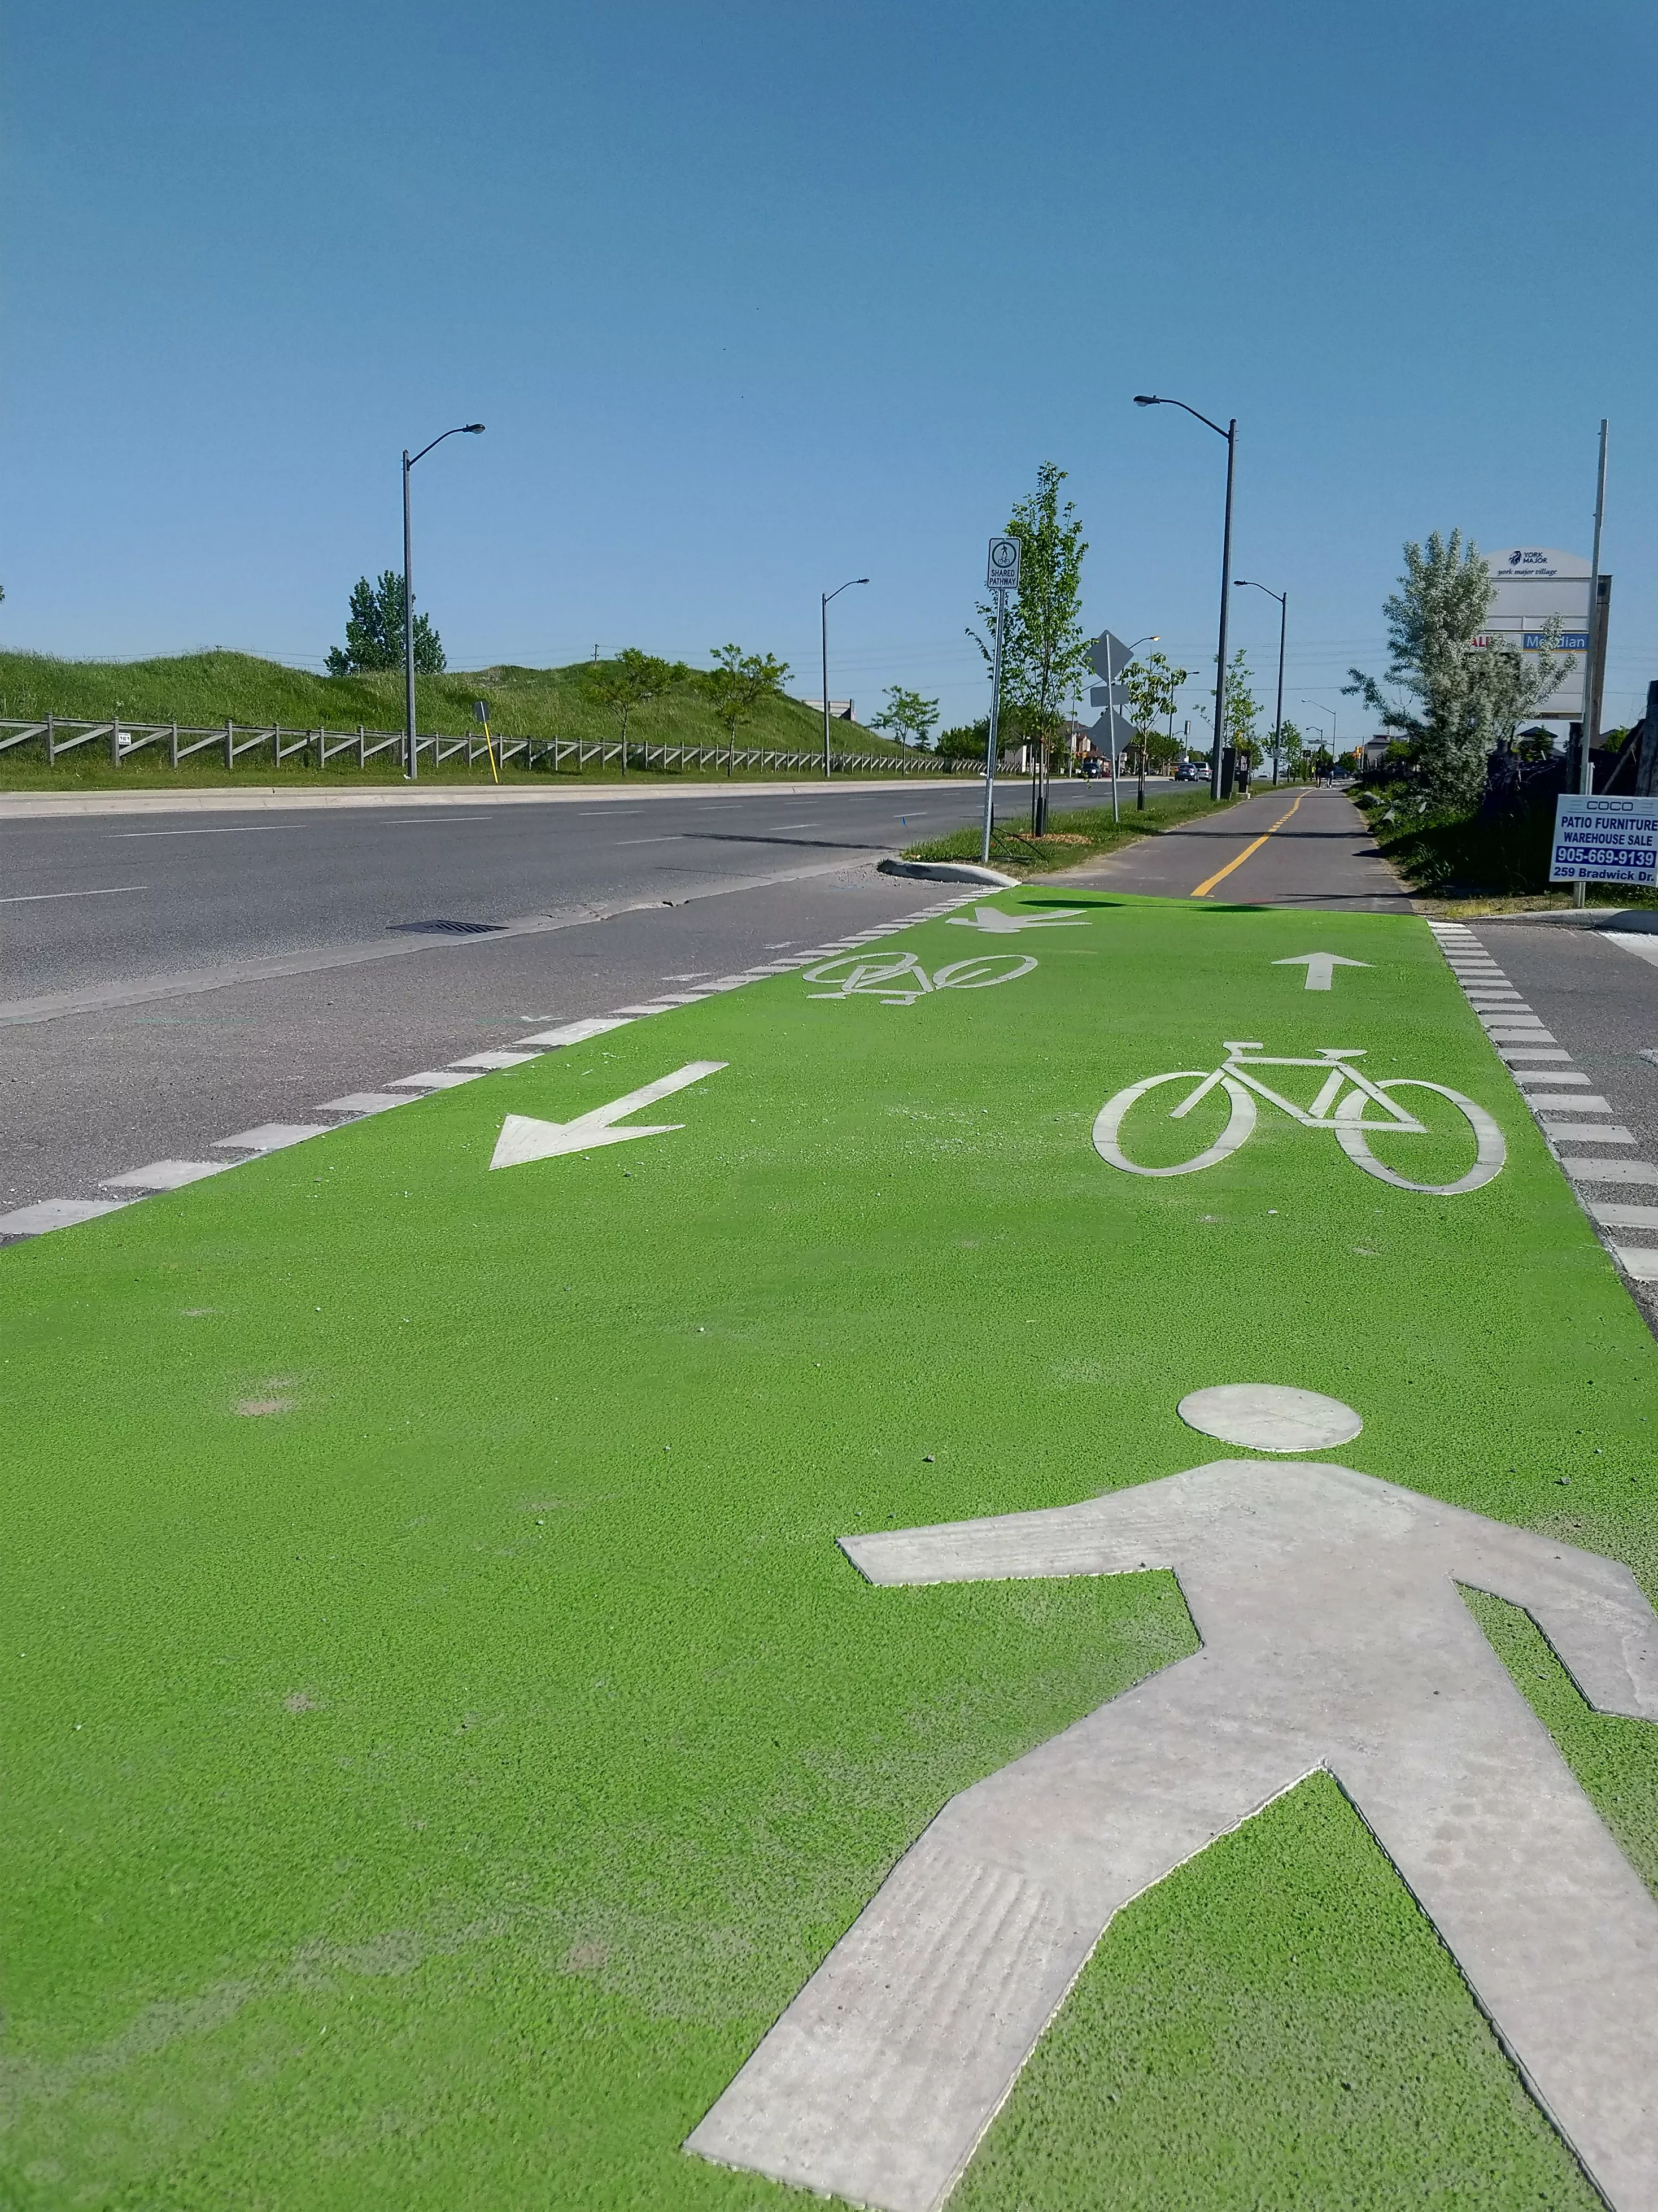 Painted bike lane